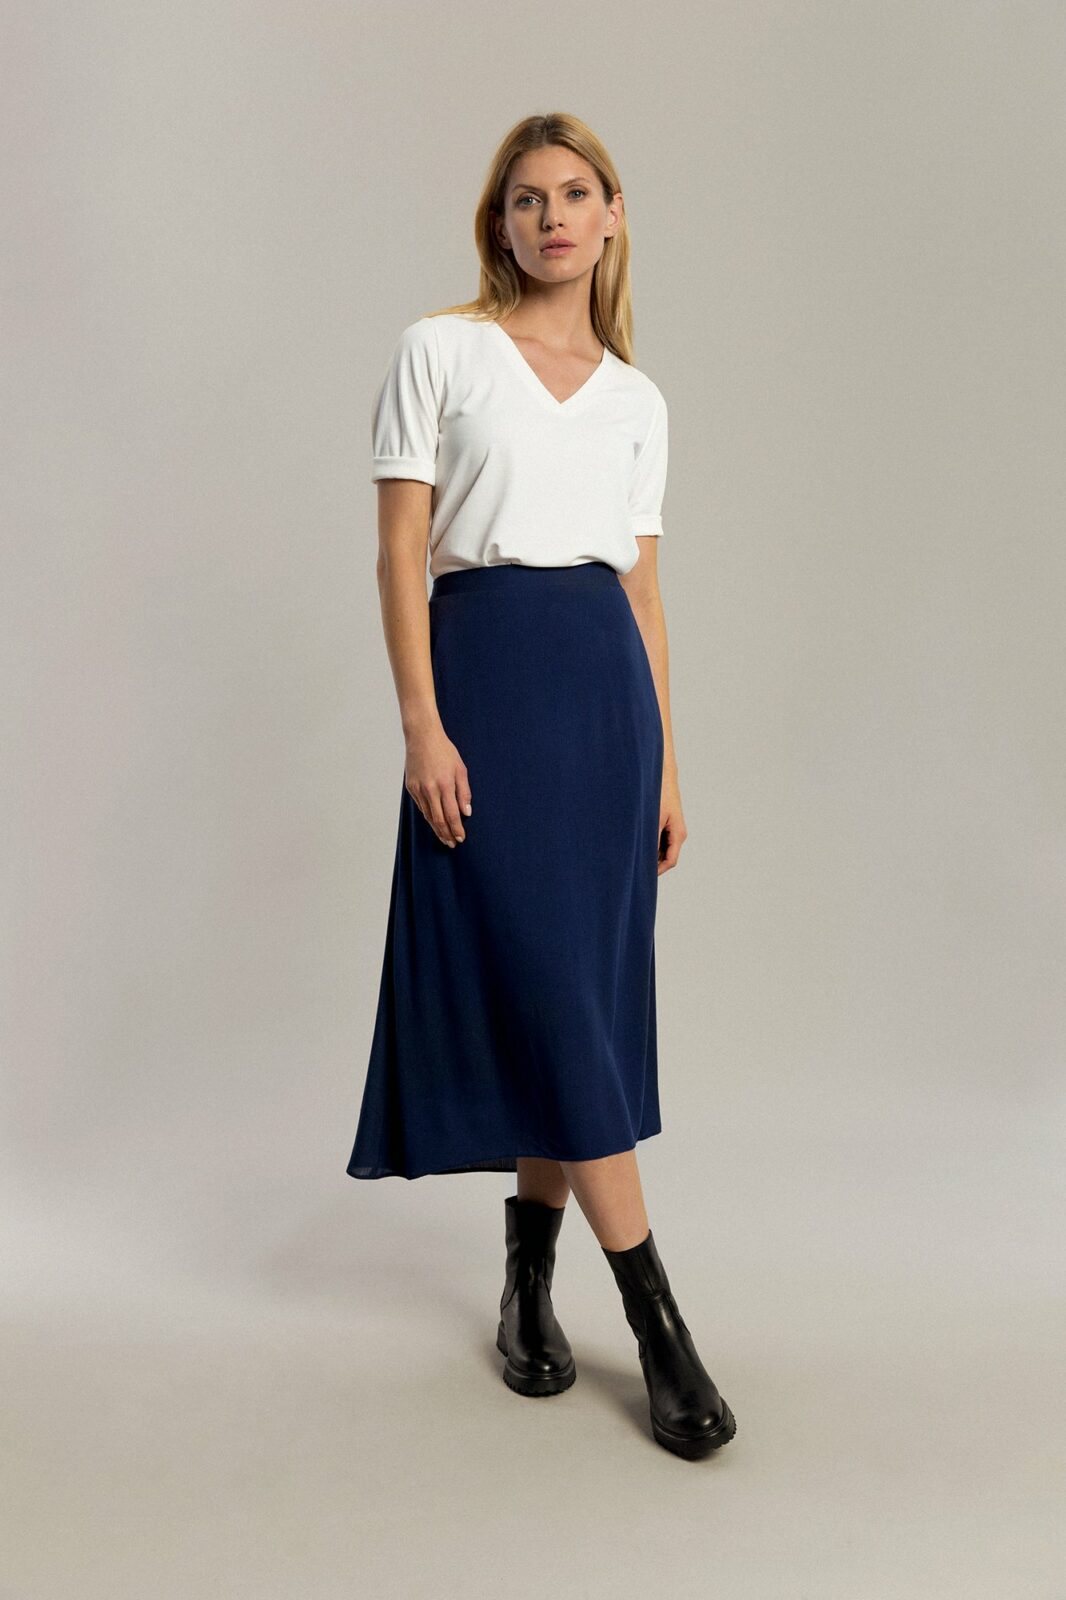 Benedict Harper Woman's Skirt Lauren Navy